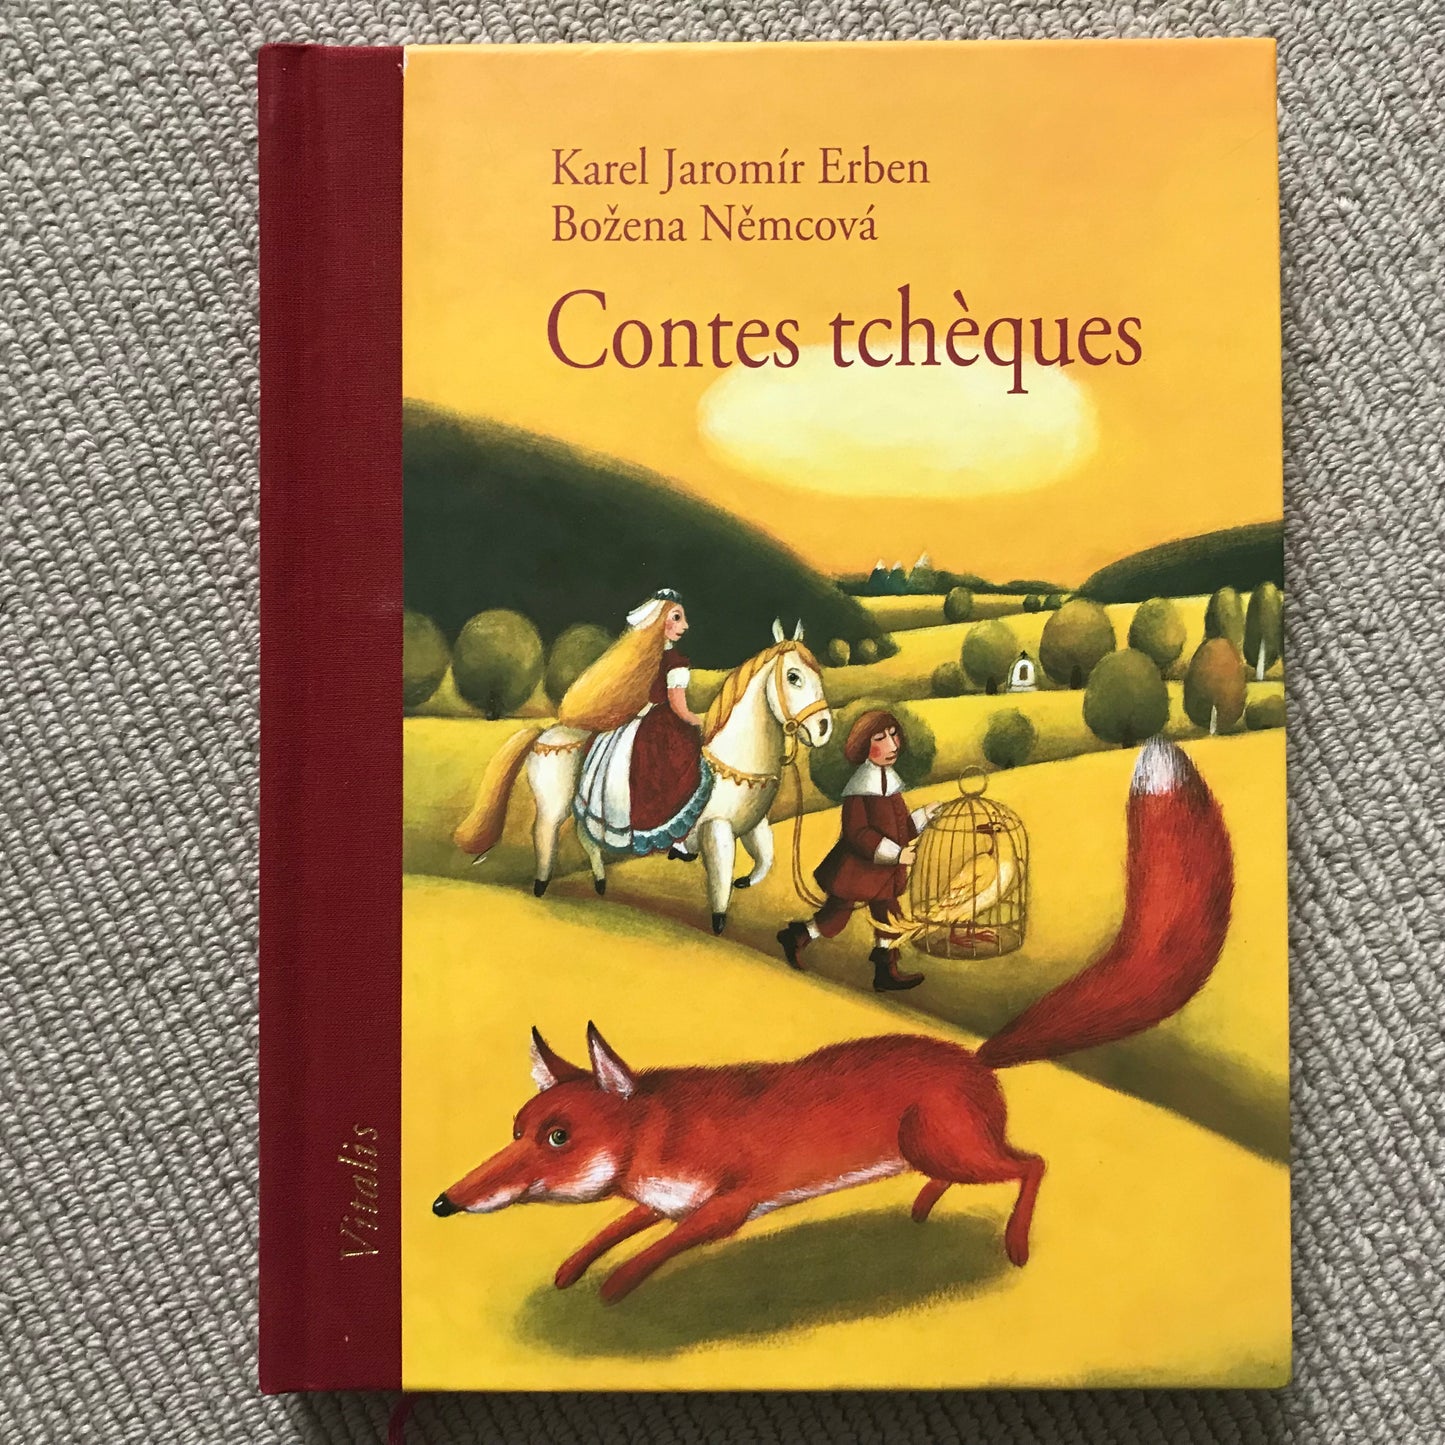 Contes Tchèques - Erben, K. J. & Nemcova, B.